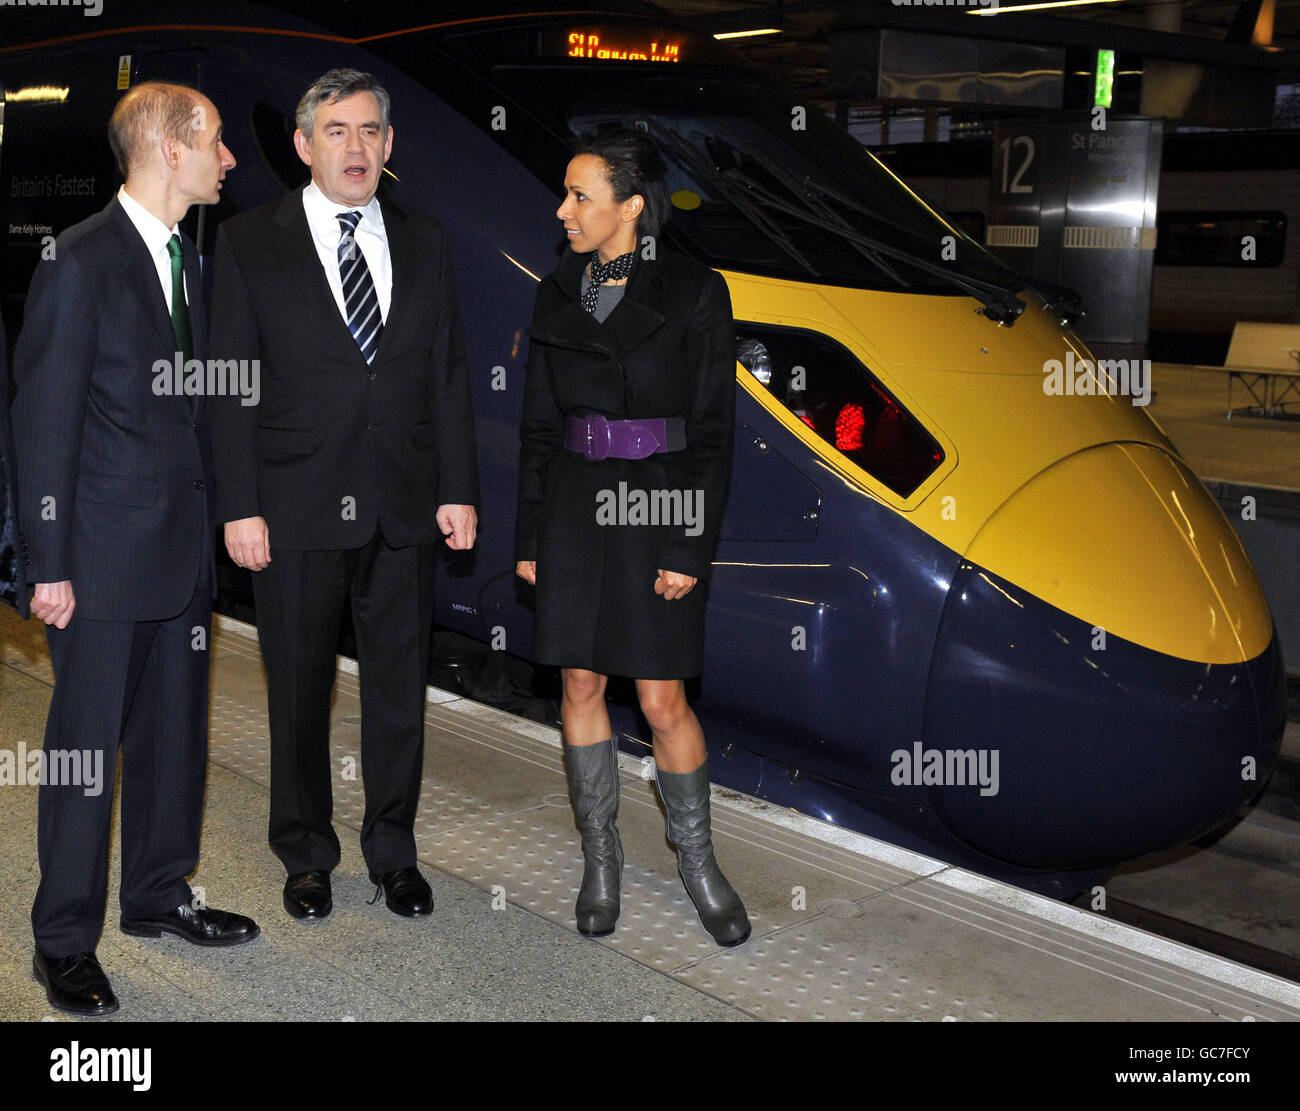 Premierminister Gordon Brown (Mitte) wird am ersten Tag der neuen Hochgeschwindigkeitszüge des Javelin-Zuges von Verkehrsminister Lord Adonis (links) und Dame Kelly Holmes (rechts) am Bahnhof St. Pancras in London begleitet. Stockfoto